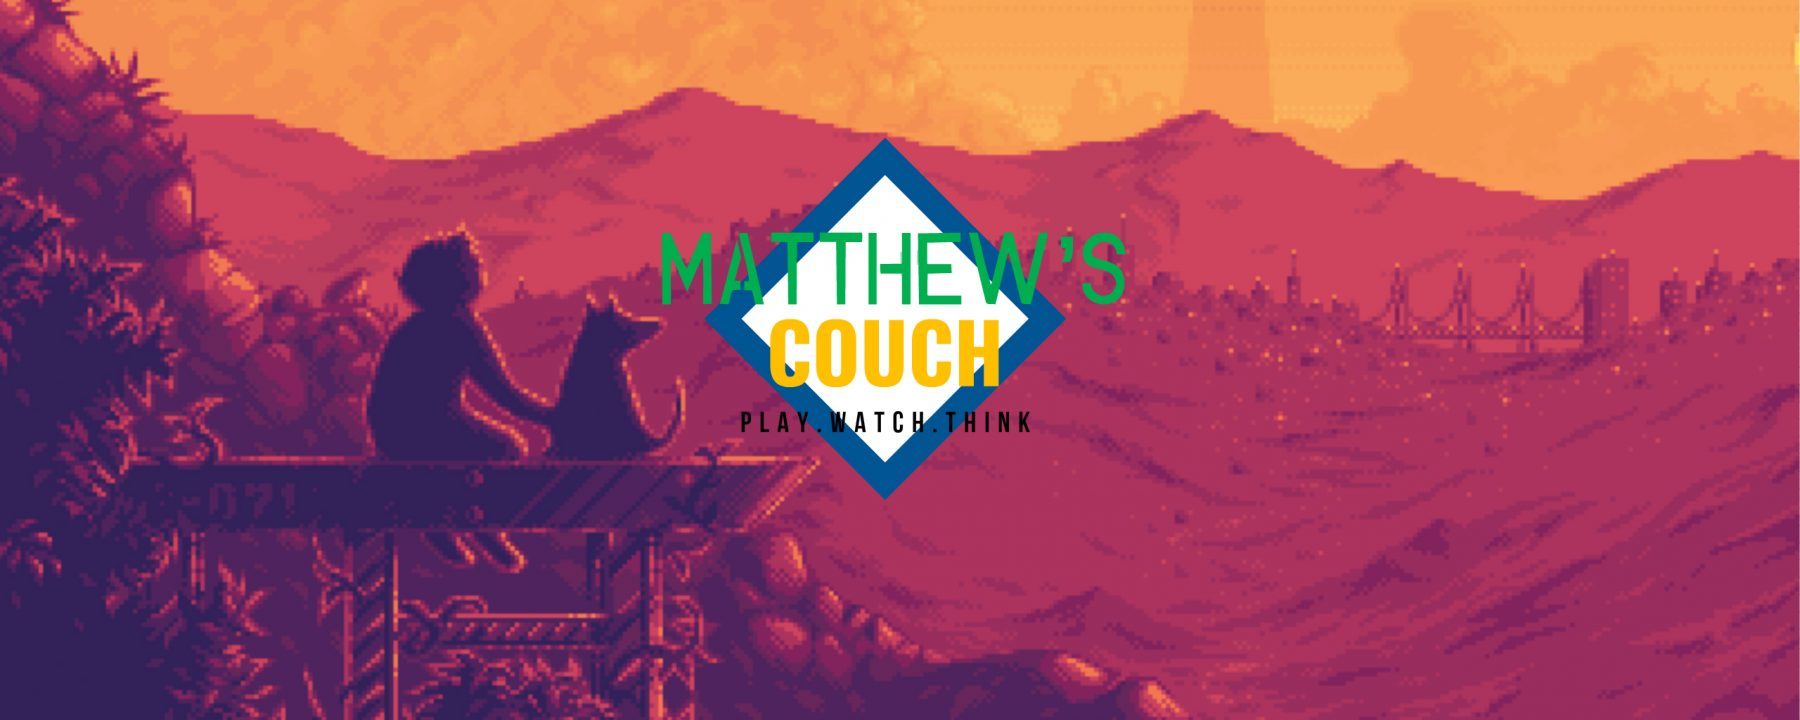 Matthew's Couch